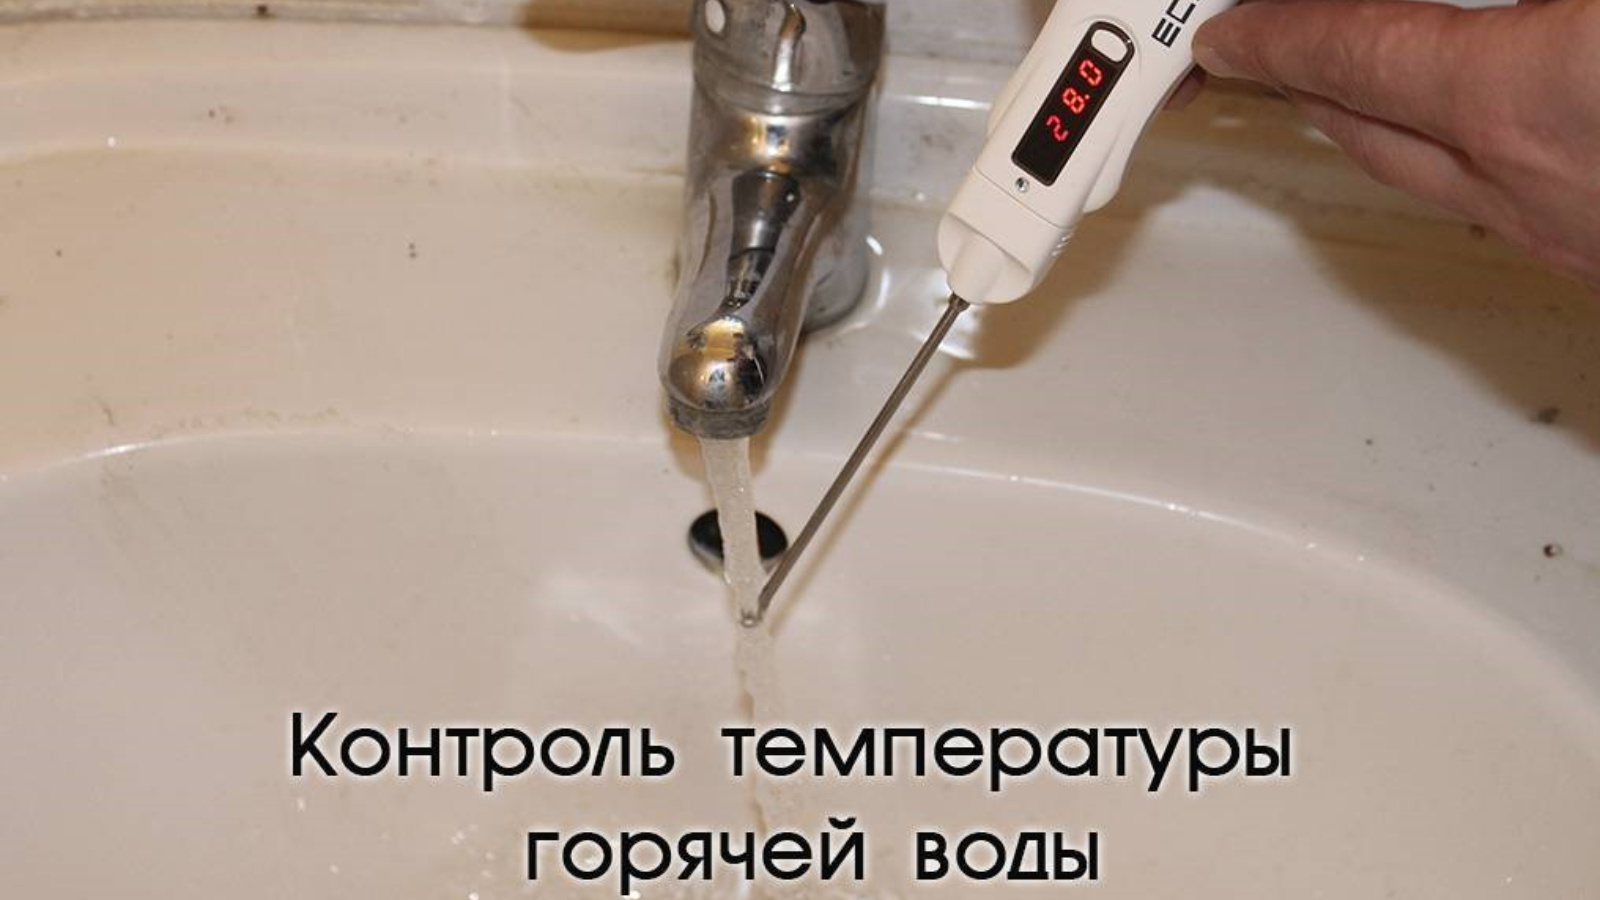 Определение горячая вода. Кран с горячей и холодной водой. Температура холодной воды из крана. Горячая вода. Горячая вода из крана.